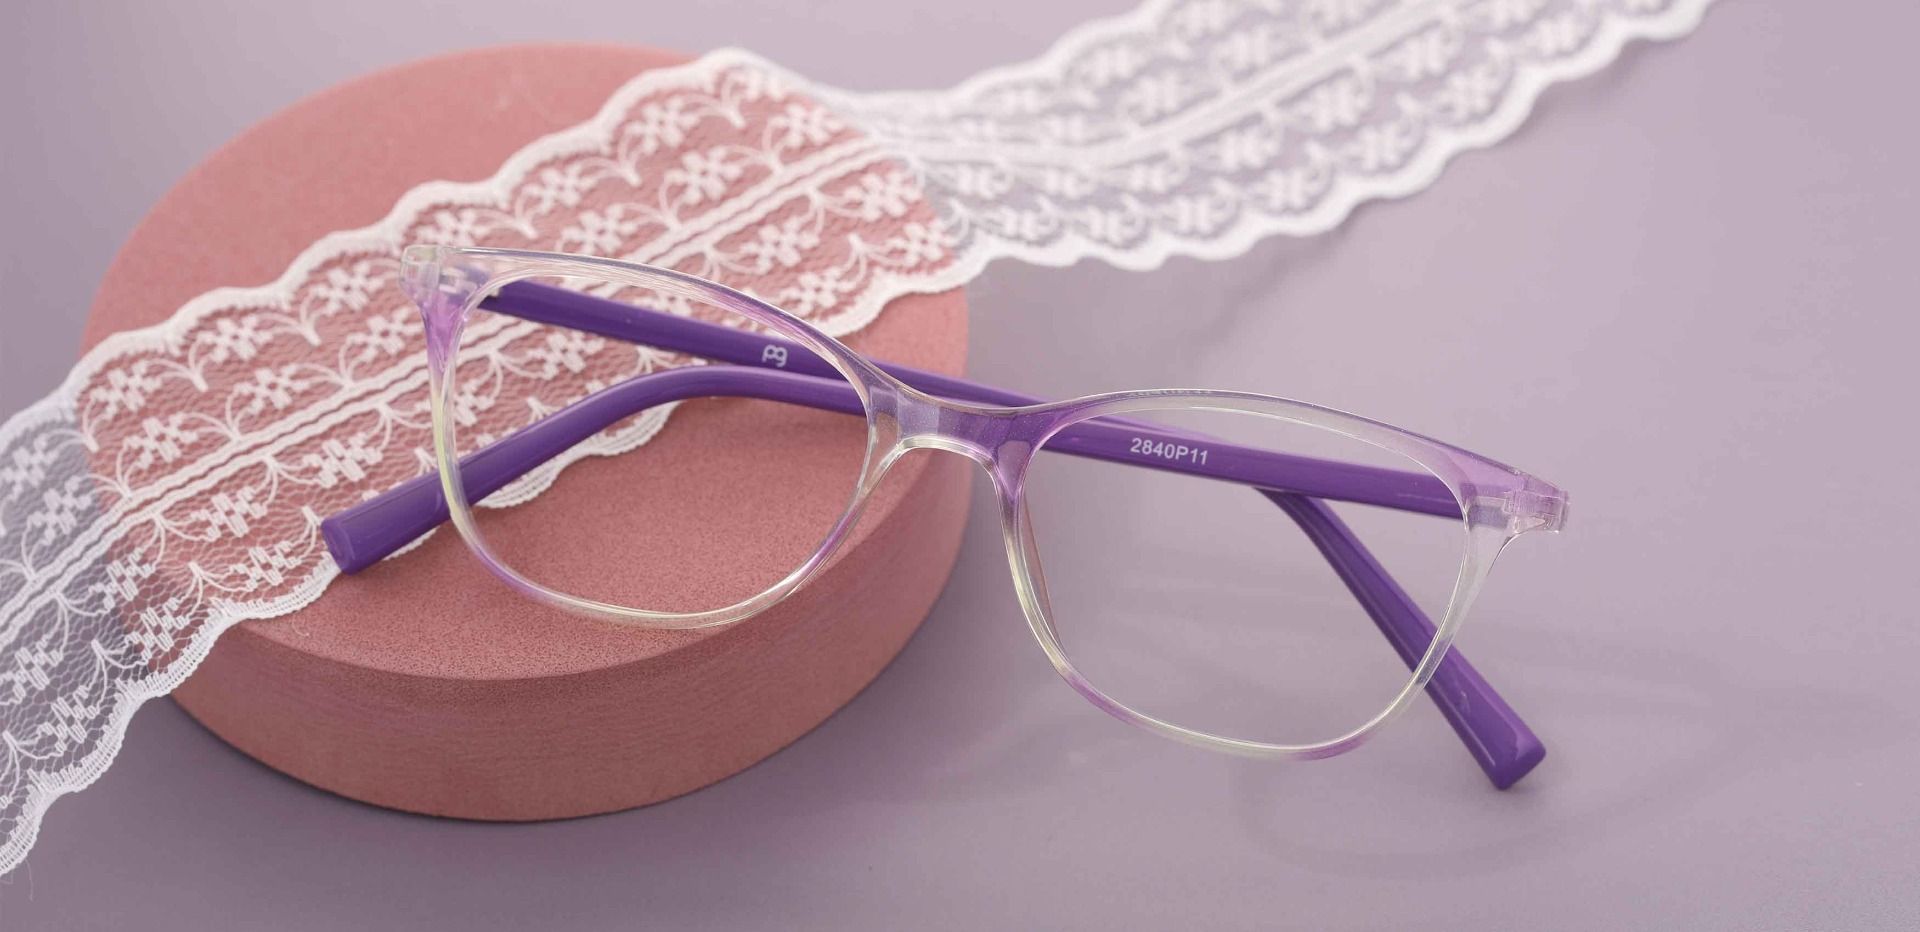 Bravo Rectangle Prescription Glasses - Purple